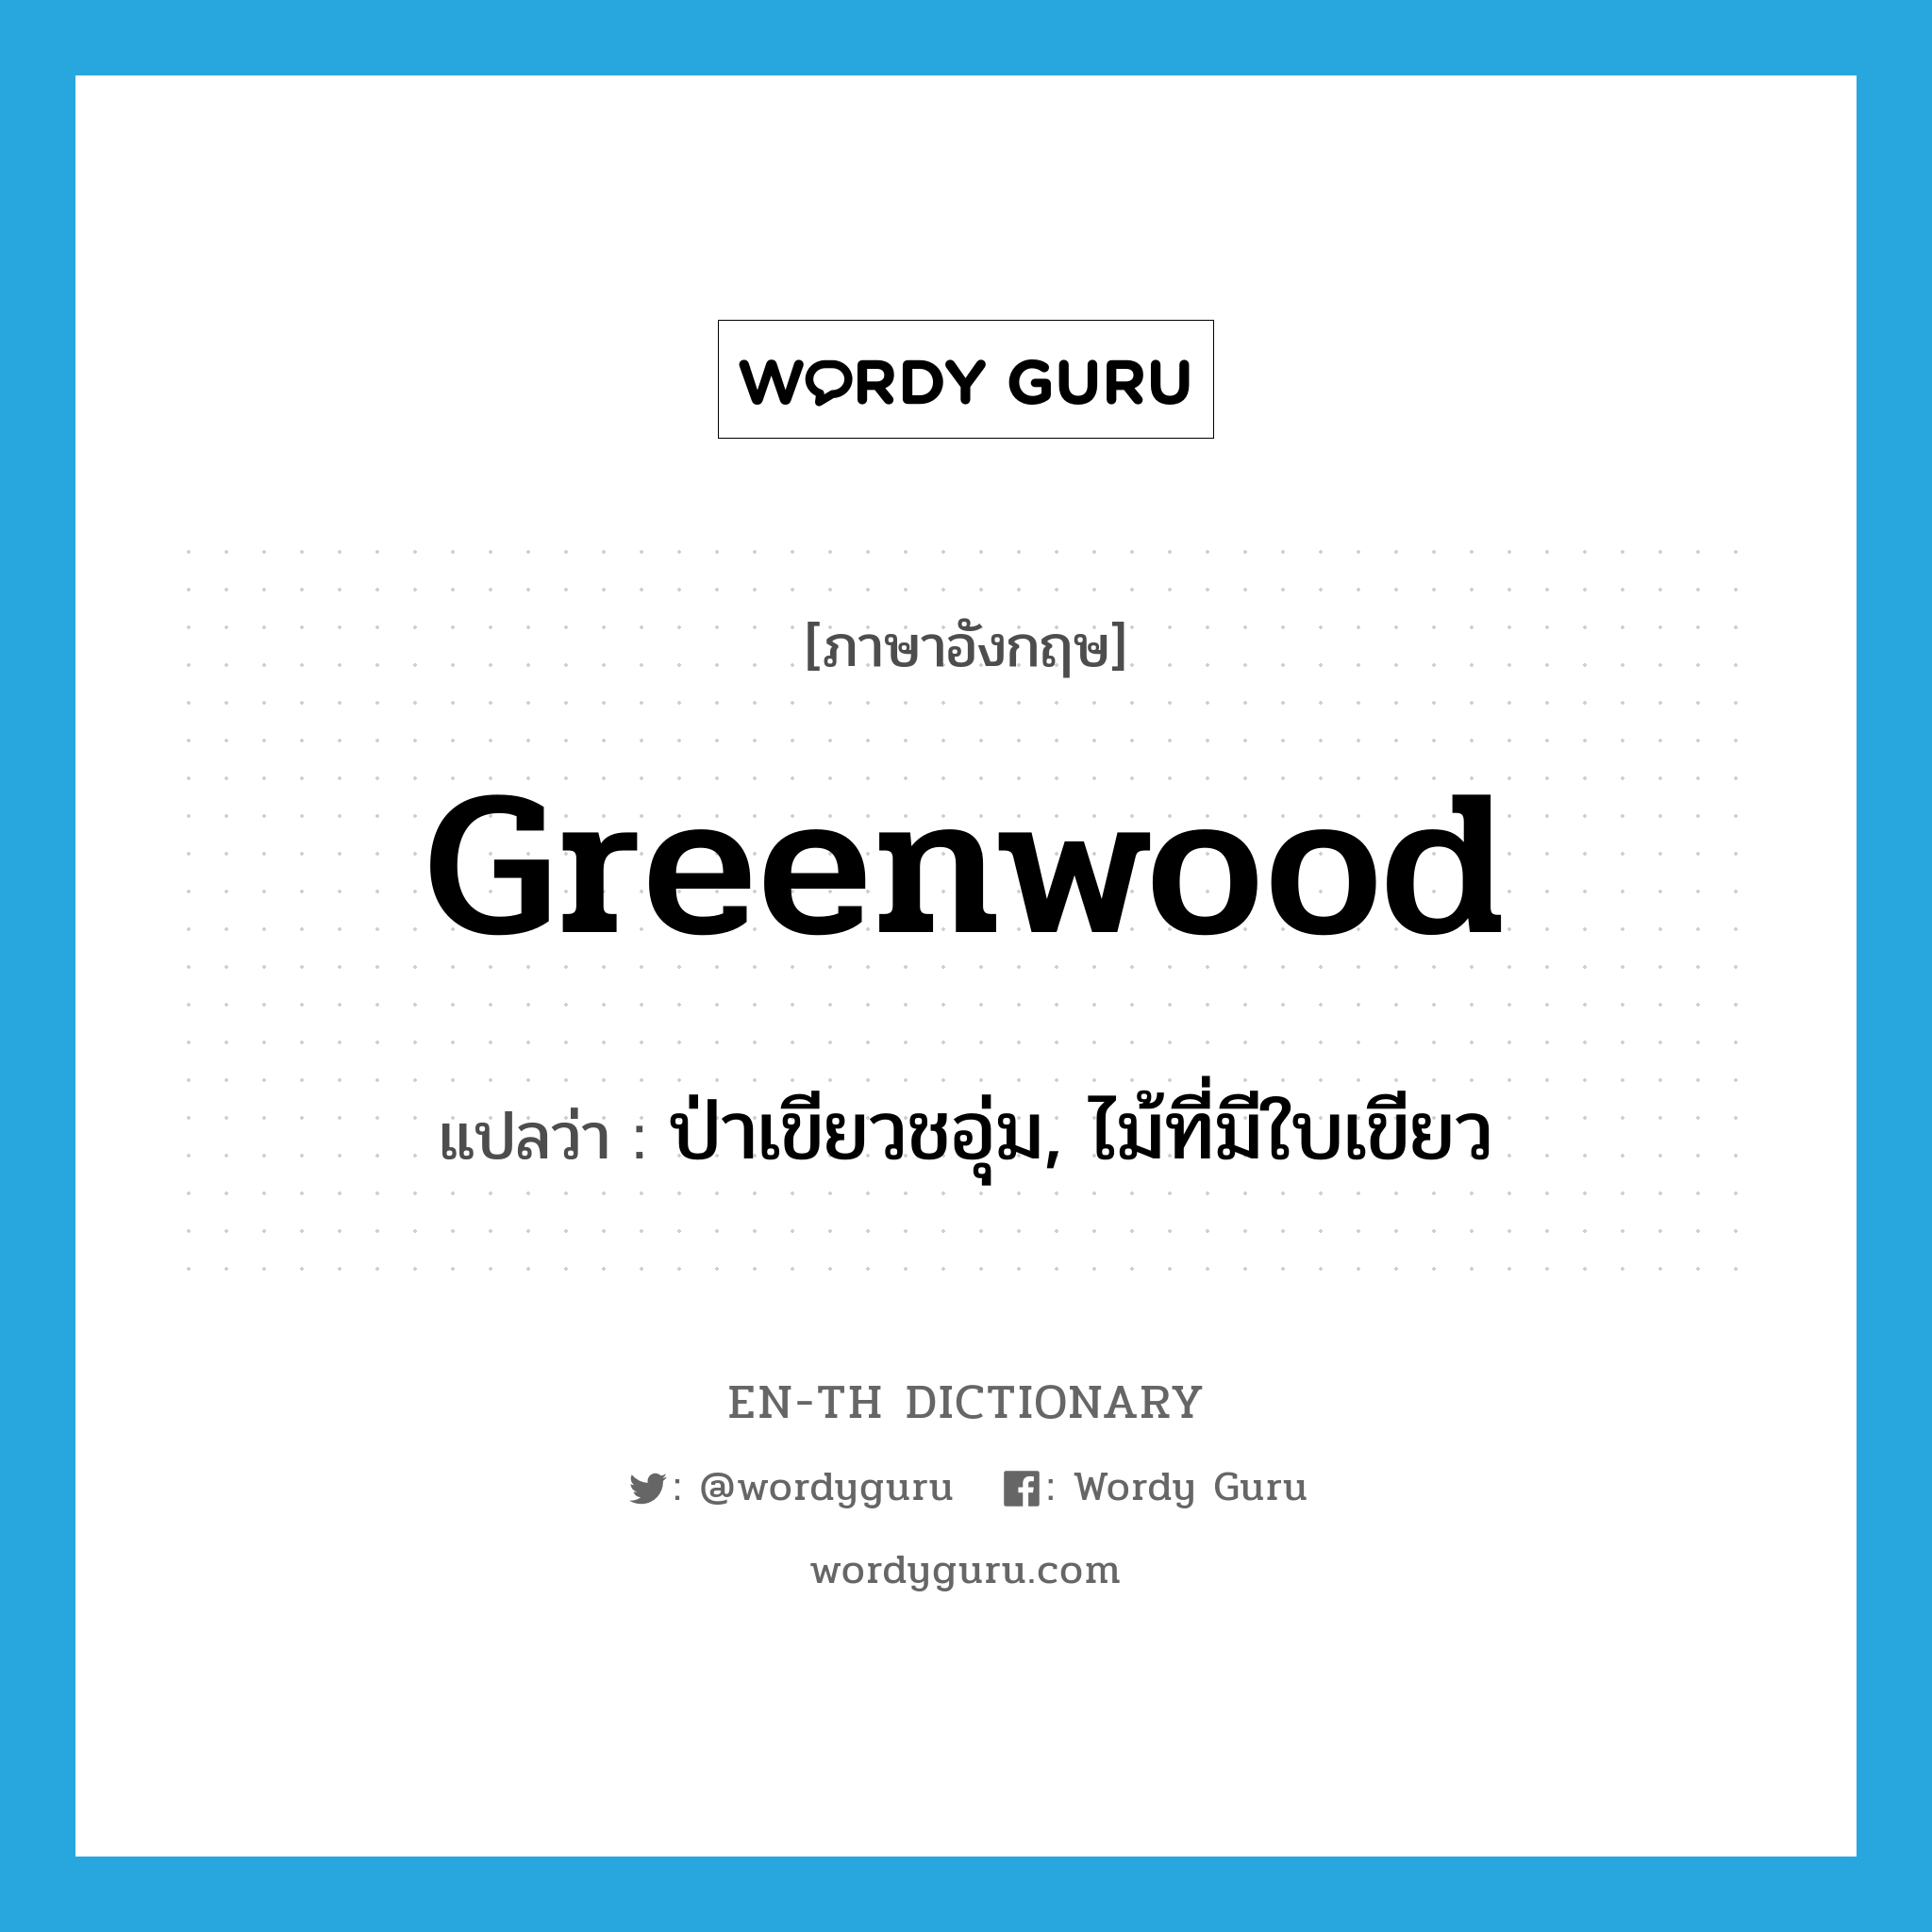 greenwood แปลว่า?, คำศัพท์ภาษาอังกฤษ greenwood แปลว่า ป่าเขียวชอุ่ม, ไม้ที่มีใบเขียว ประเภท N หมวด N